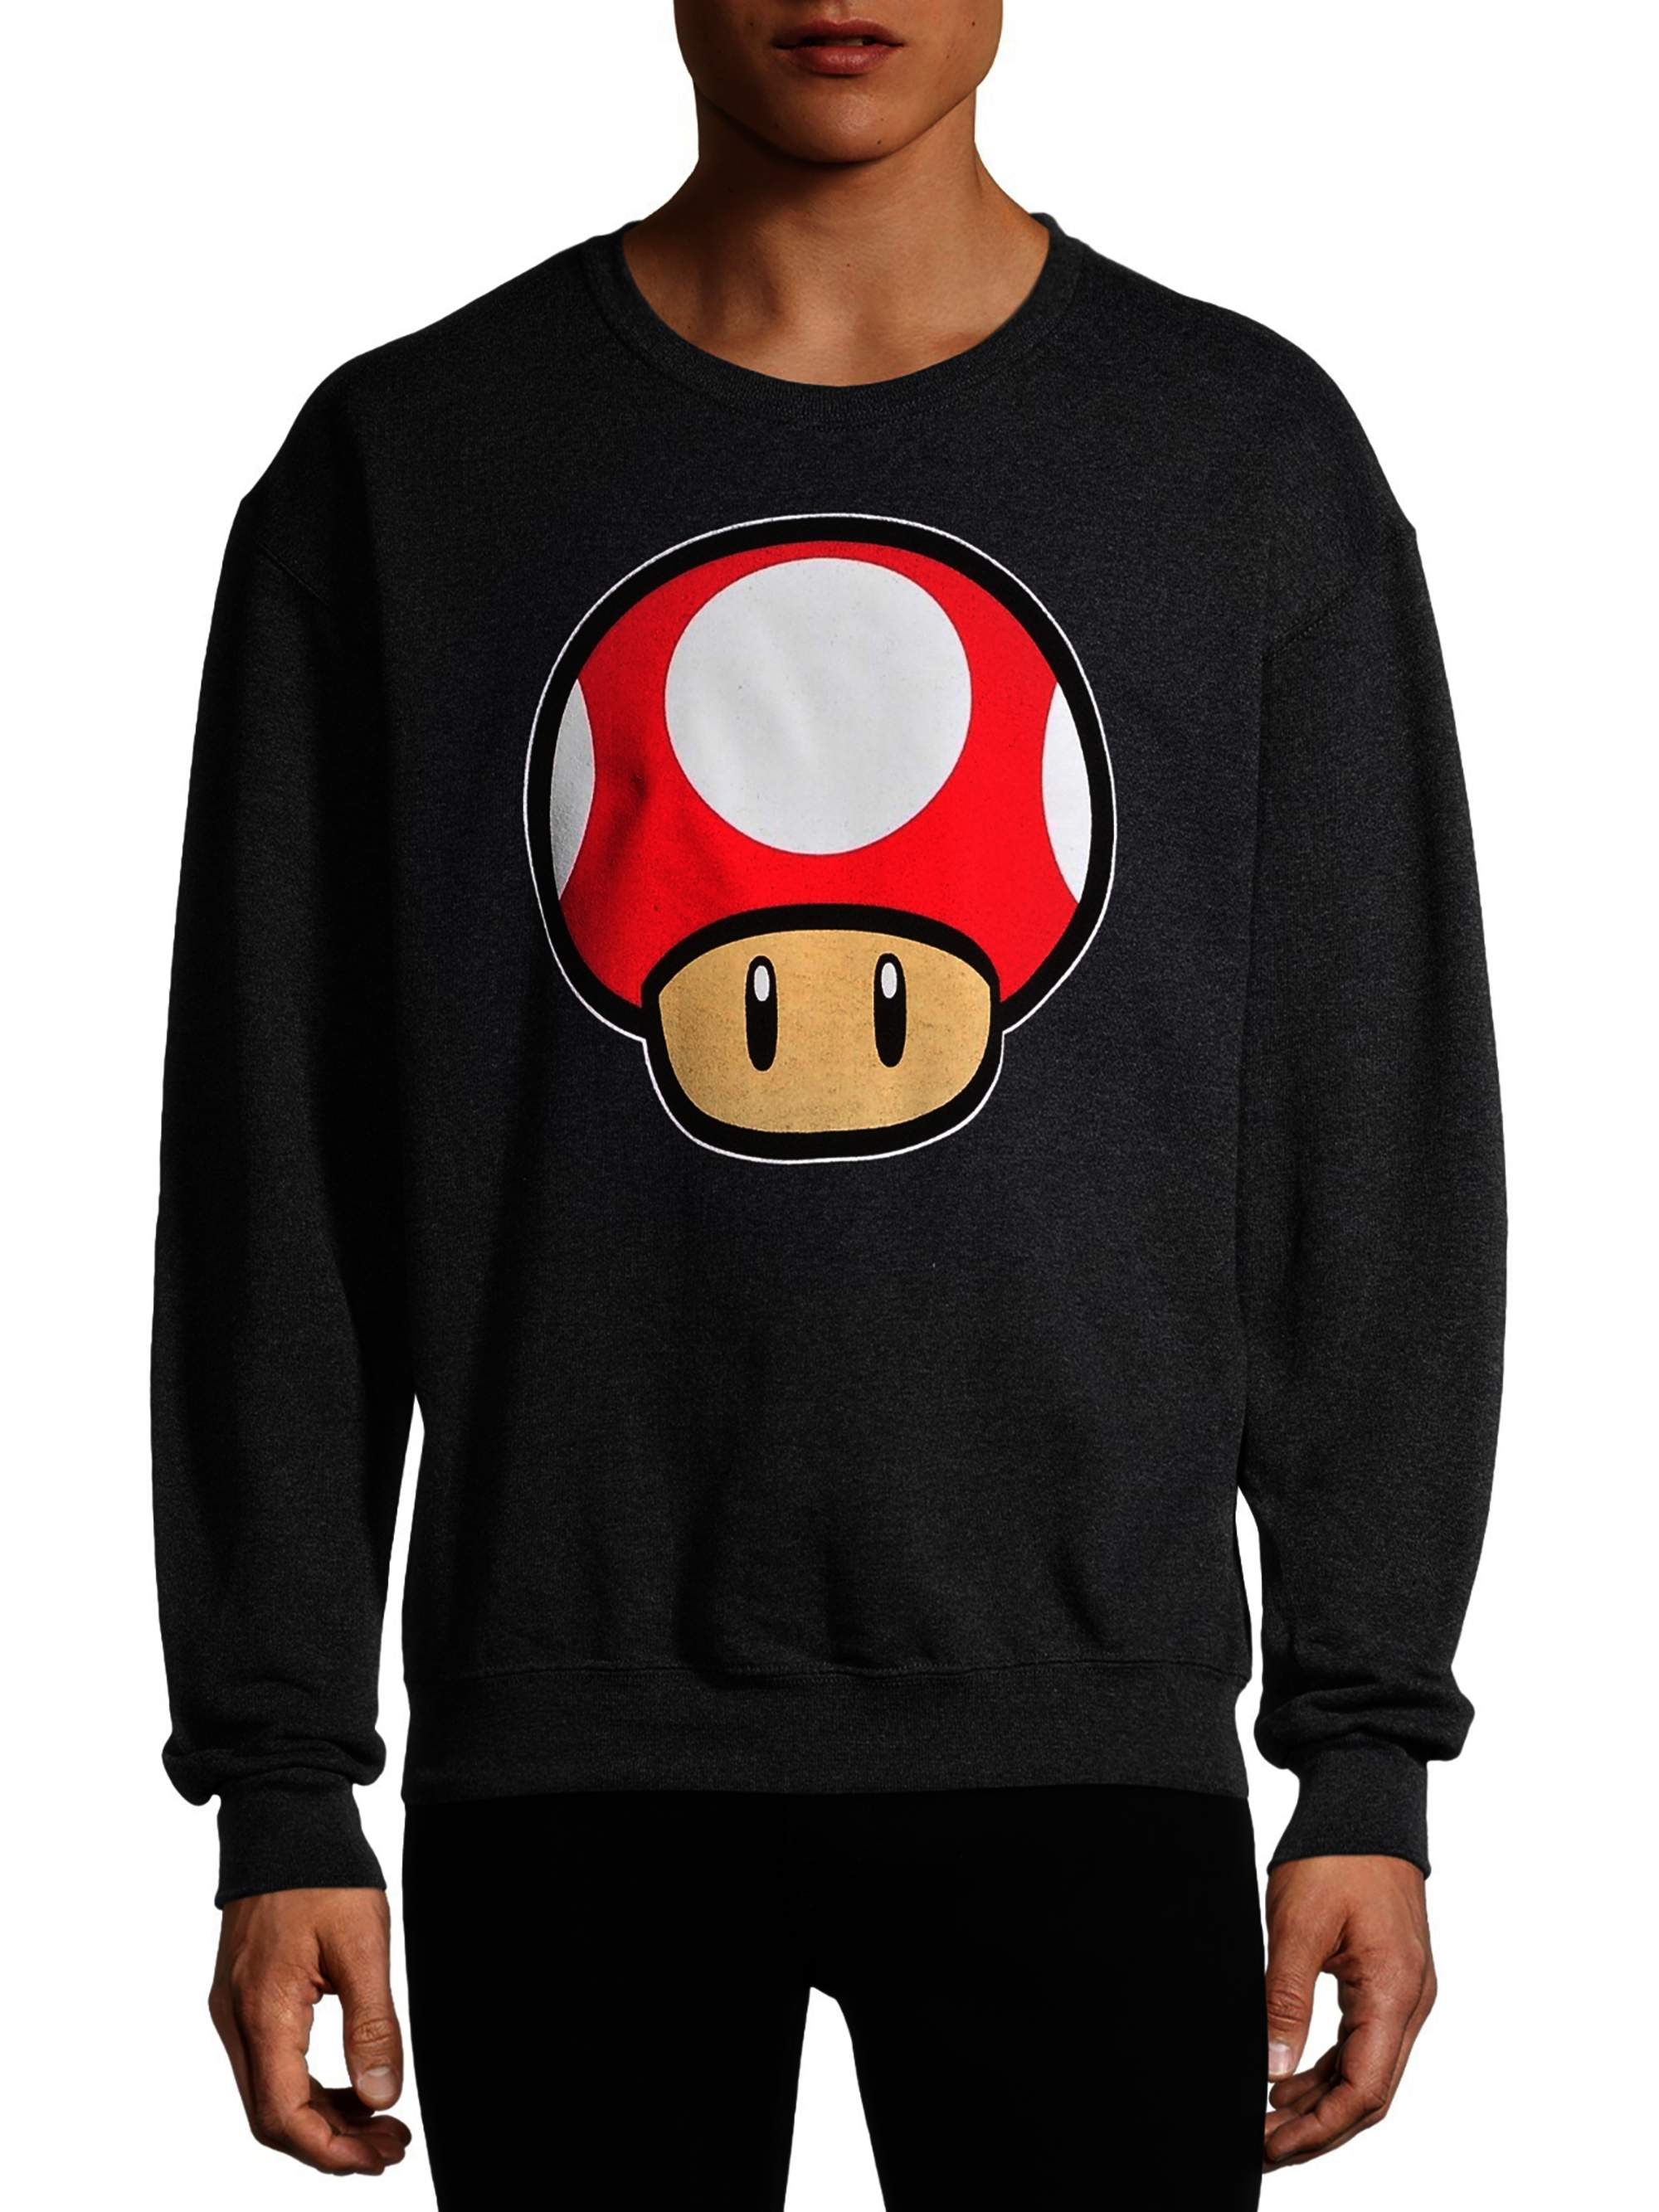 Nintendo Mario Kart Toad Power Up Men's and Big Men's Graphic Fleece Sweatshirt - image 1 of 6